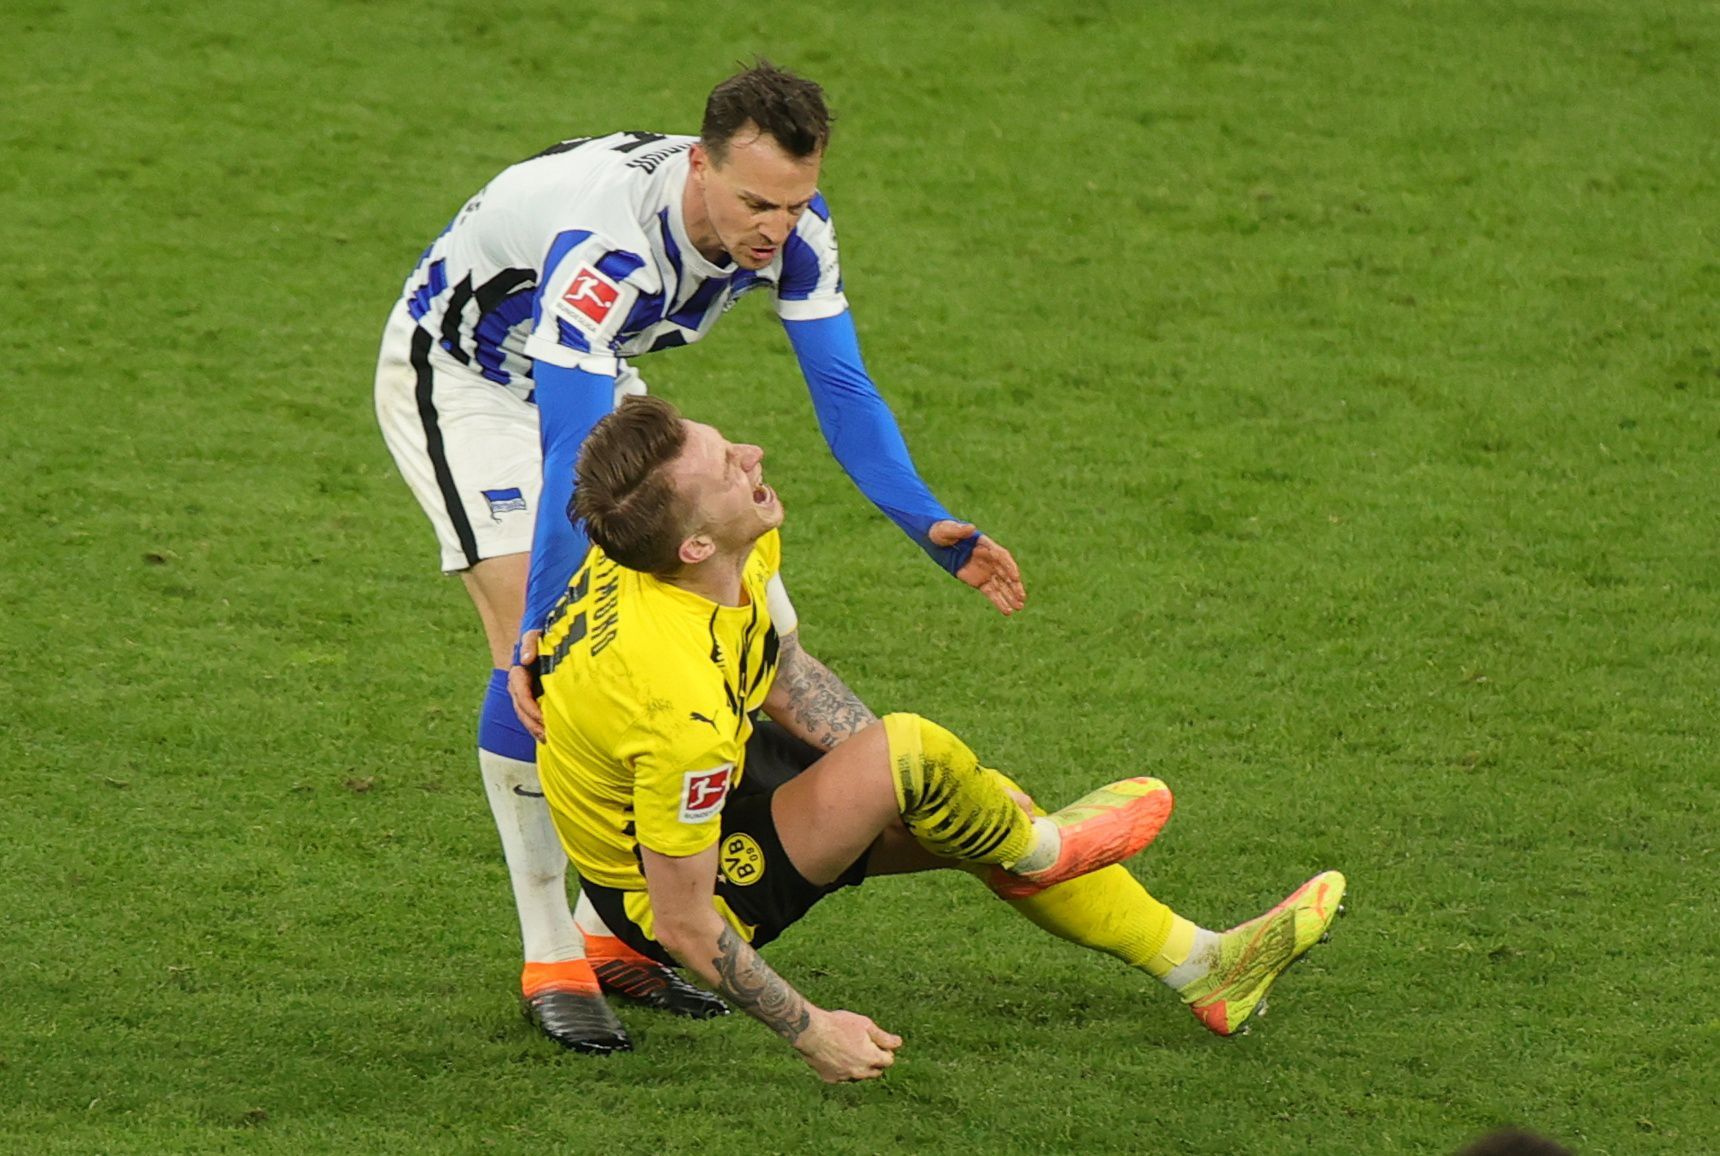 25. kolo německé fotbalové ligy 2020/21, Dortmund - Hertha: "Červený faul" Vladimíra Daridy na Marca Reuse